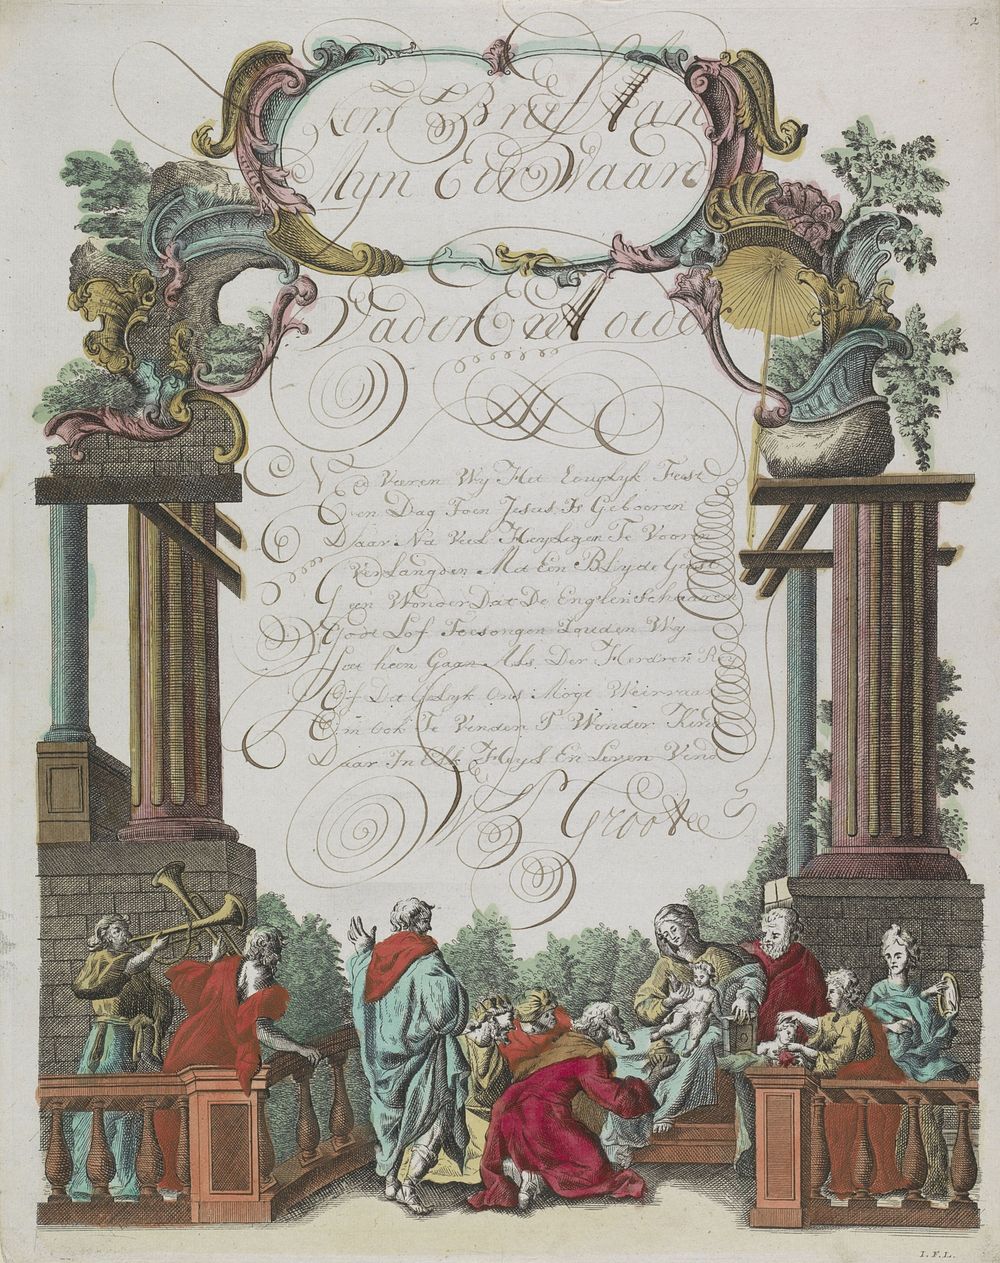 Wensbrief met de aanbidding door de koningen (1774 - 1775) by Monogrammist IFL and anonymous